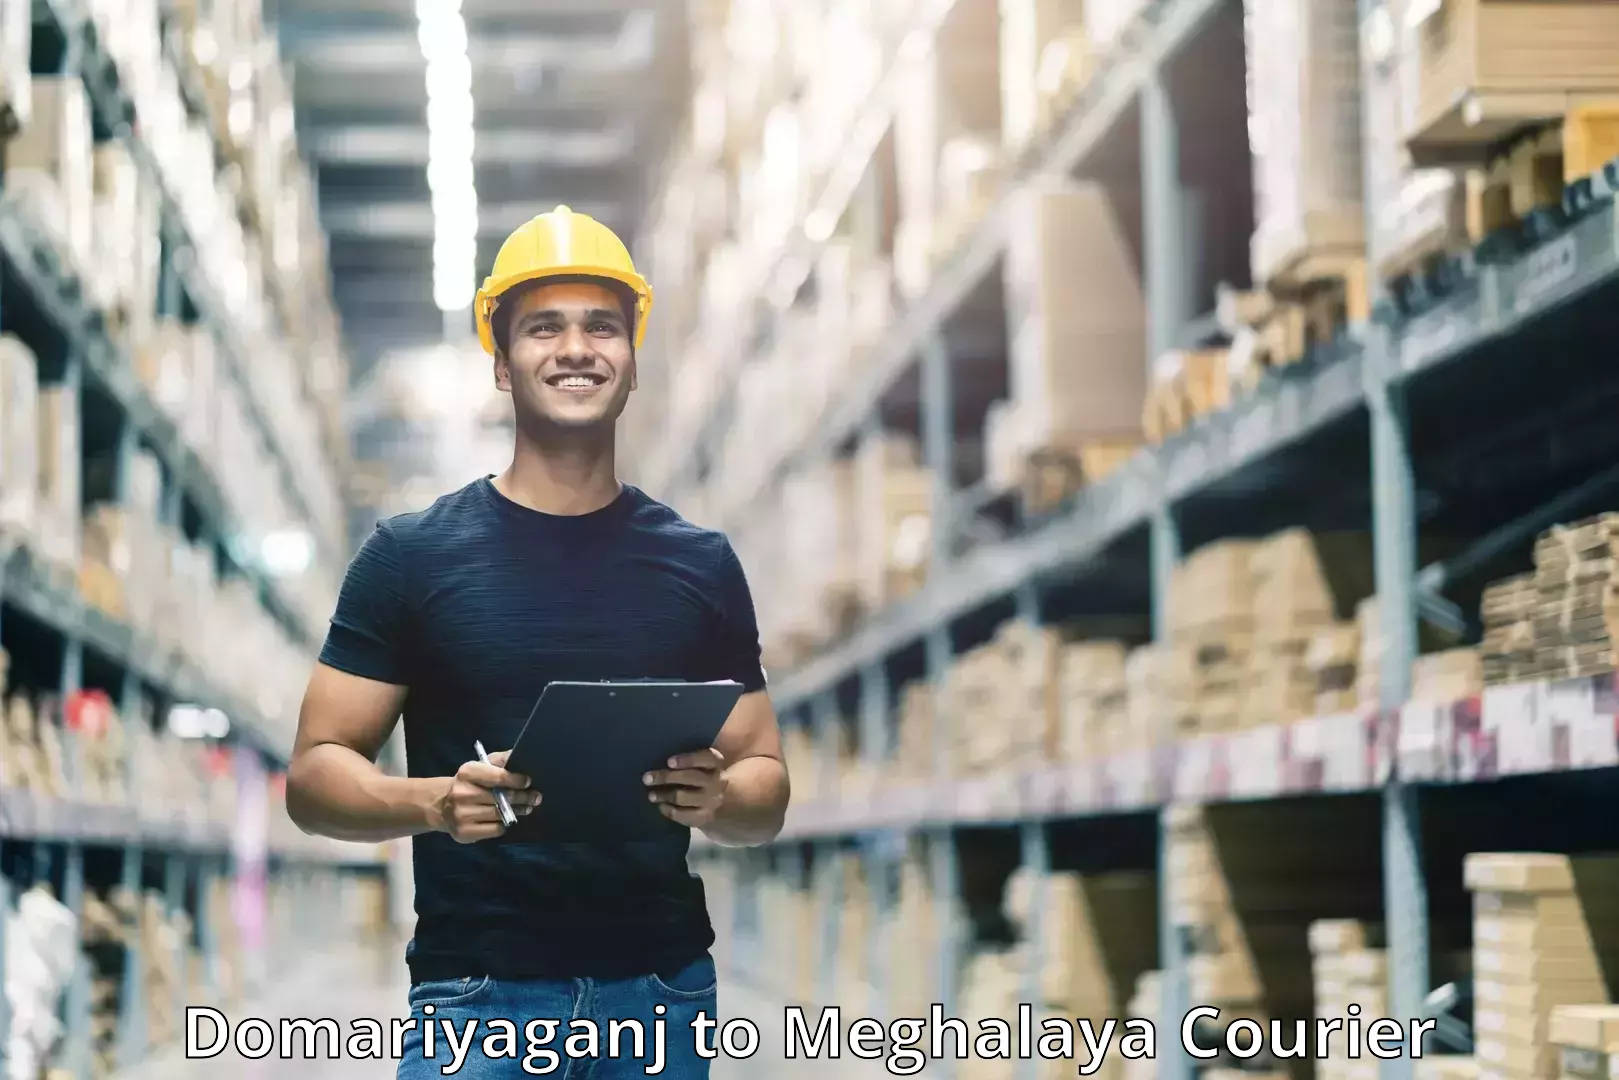 Large-scale shipping solutions Domariyaganj to Mairang